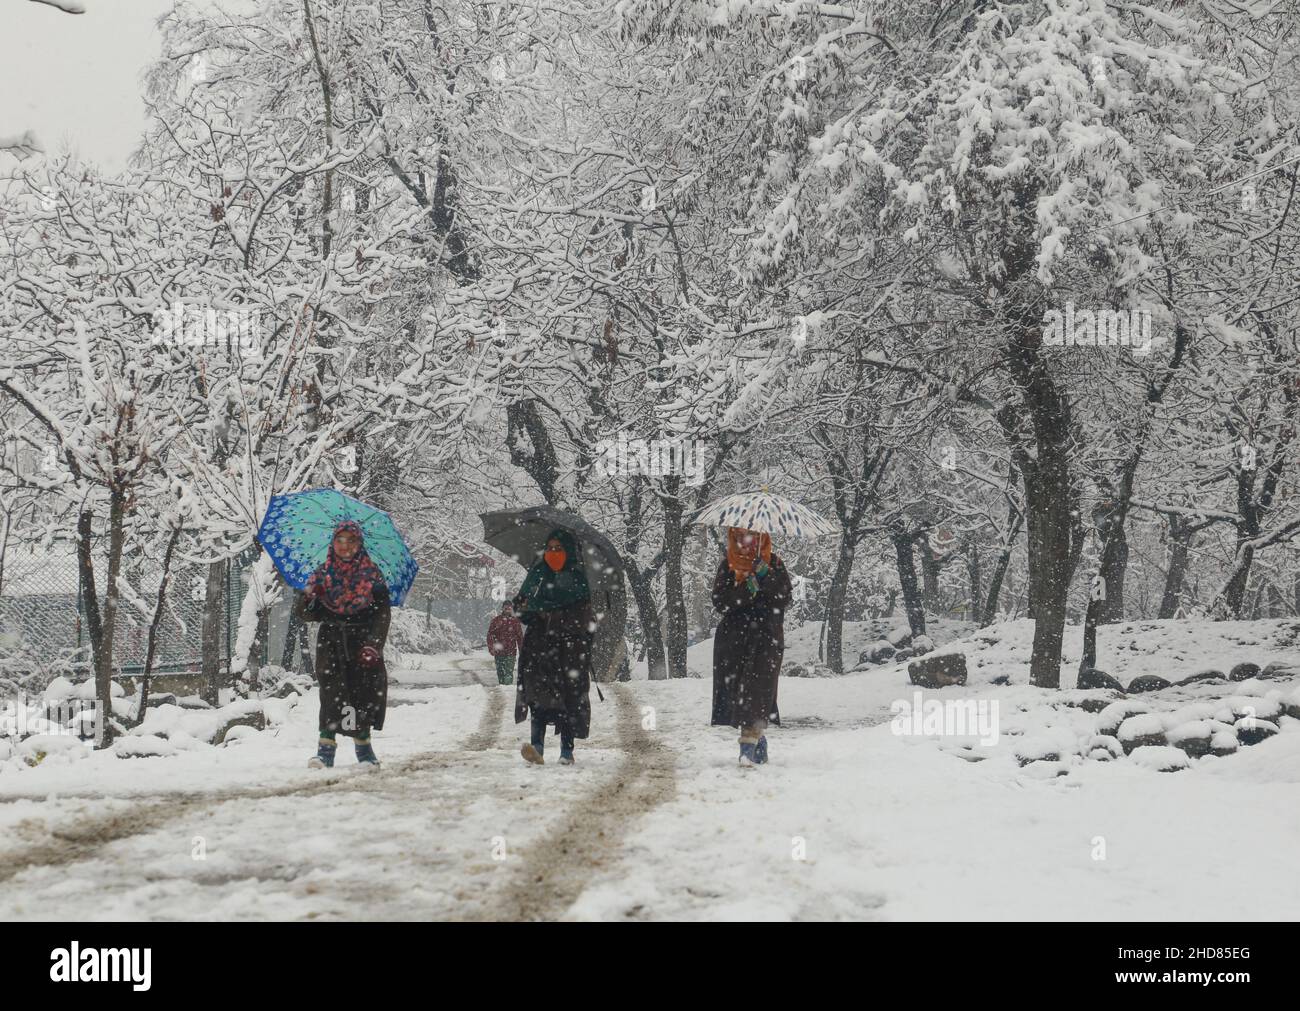 4 janvier 2022, Srinagar, Jammu-et-Cachemire, Inde: Les enfants marchent dans un verger couvert de neige à la périphérie de Srinagar-Cachemire.Le bureau météorologique a publié lundi un avis annonçant des chutes de neige modérées à fortes au Jammu-et-Cachemire et au Ladakh, et a mis en garde contre les perturbations des transports en surface et aériens de janvier 3 à janvier 9.(Credit image: © Sajad Hameed/Pacific Press via ZUMA Press Wire) Banque D'Images